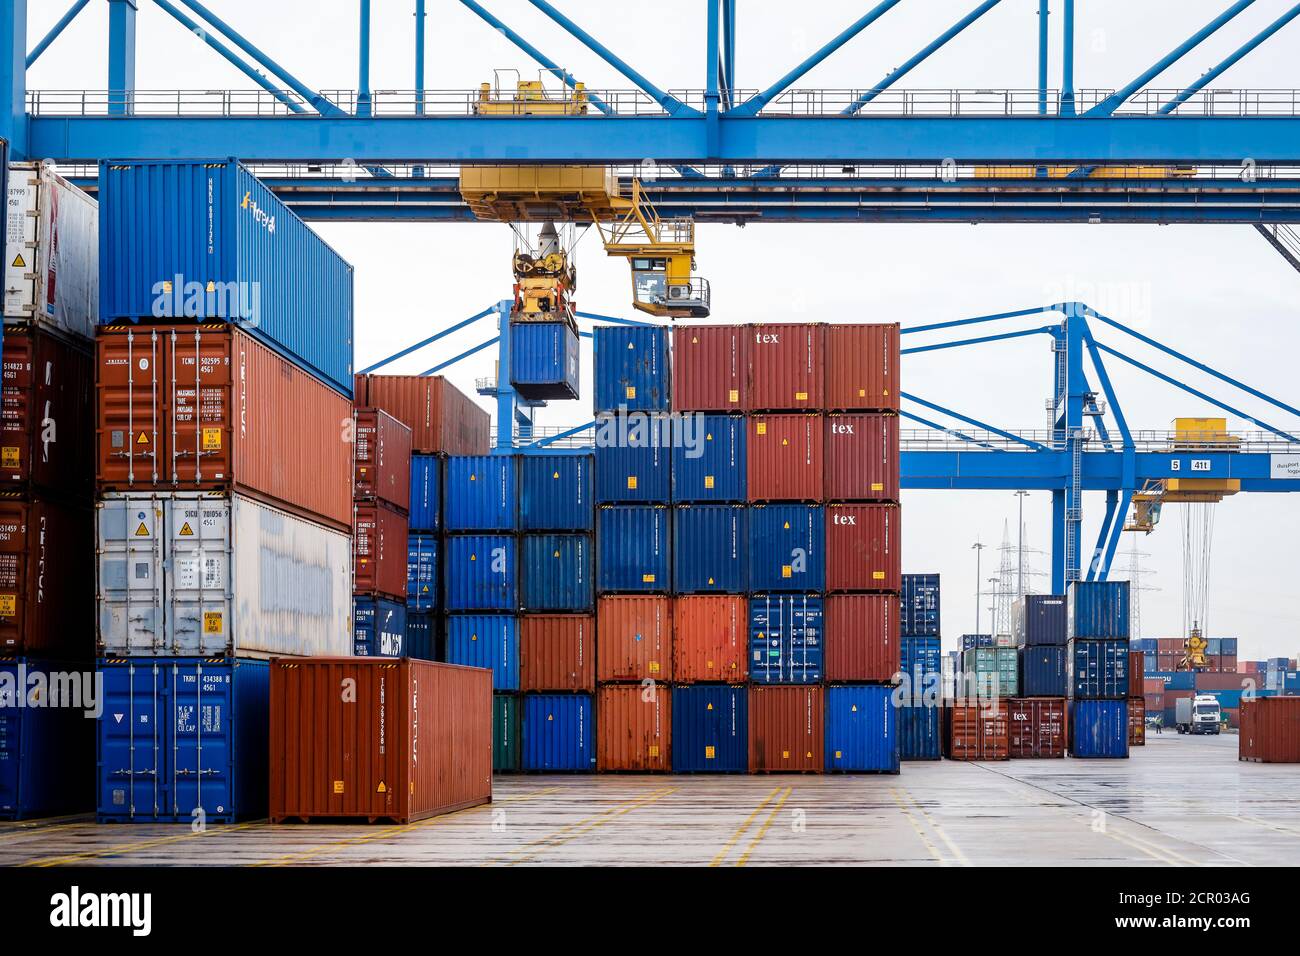 Container Terminal duisport Logport, Hafen Duisburg, Duisburg, Ruhrgebiet, Nordrhein-Westfalen, Deutschland, Europa Stockfoto